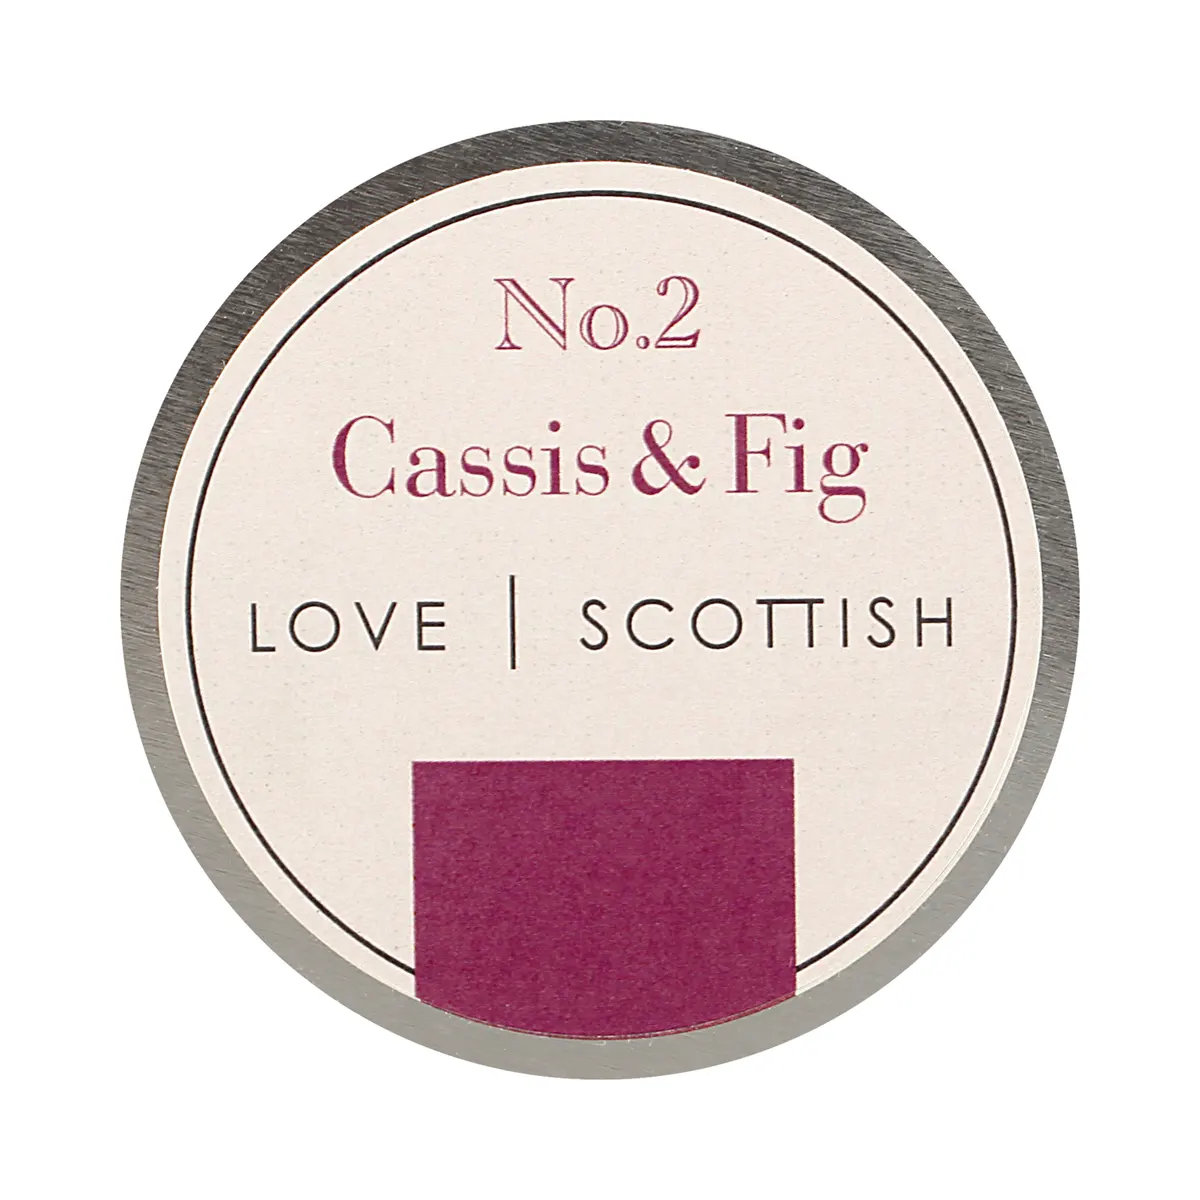 Love Scottish Travel Tin - Cassis & Fig - handgefertigte Duftkerze aus Kokoswachs